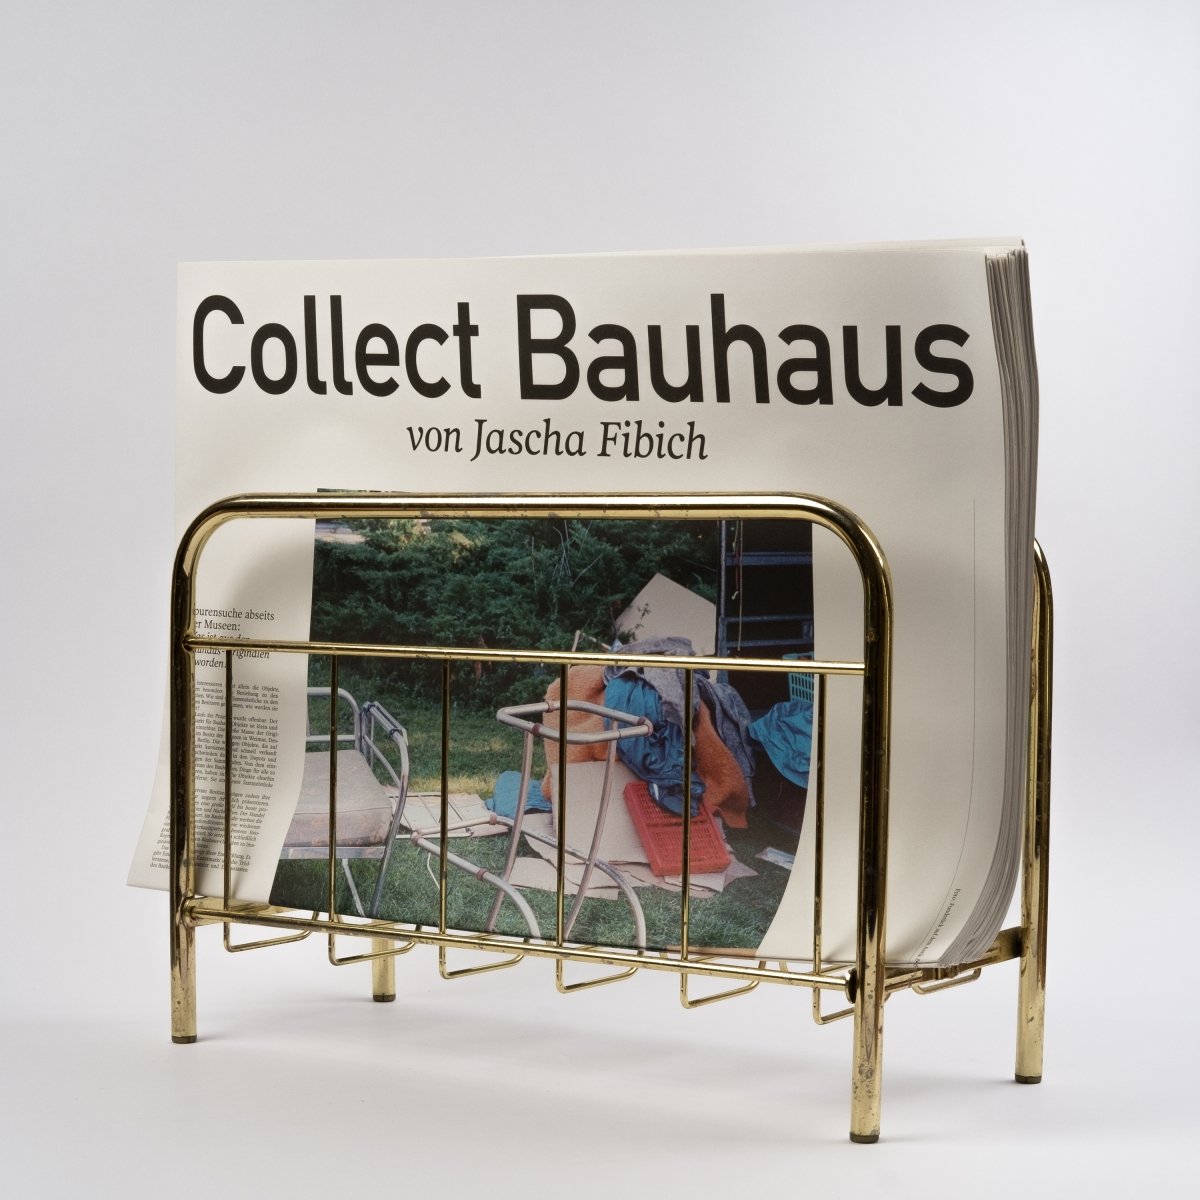 Collect Bauhaus - Newspaper